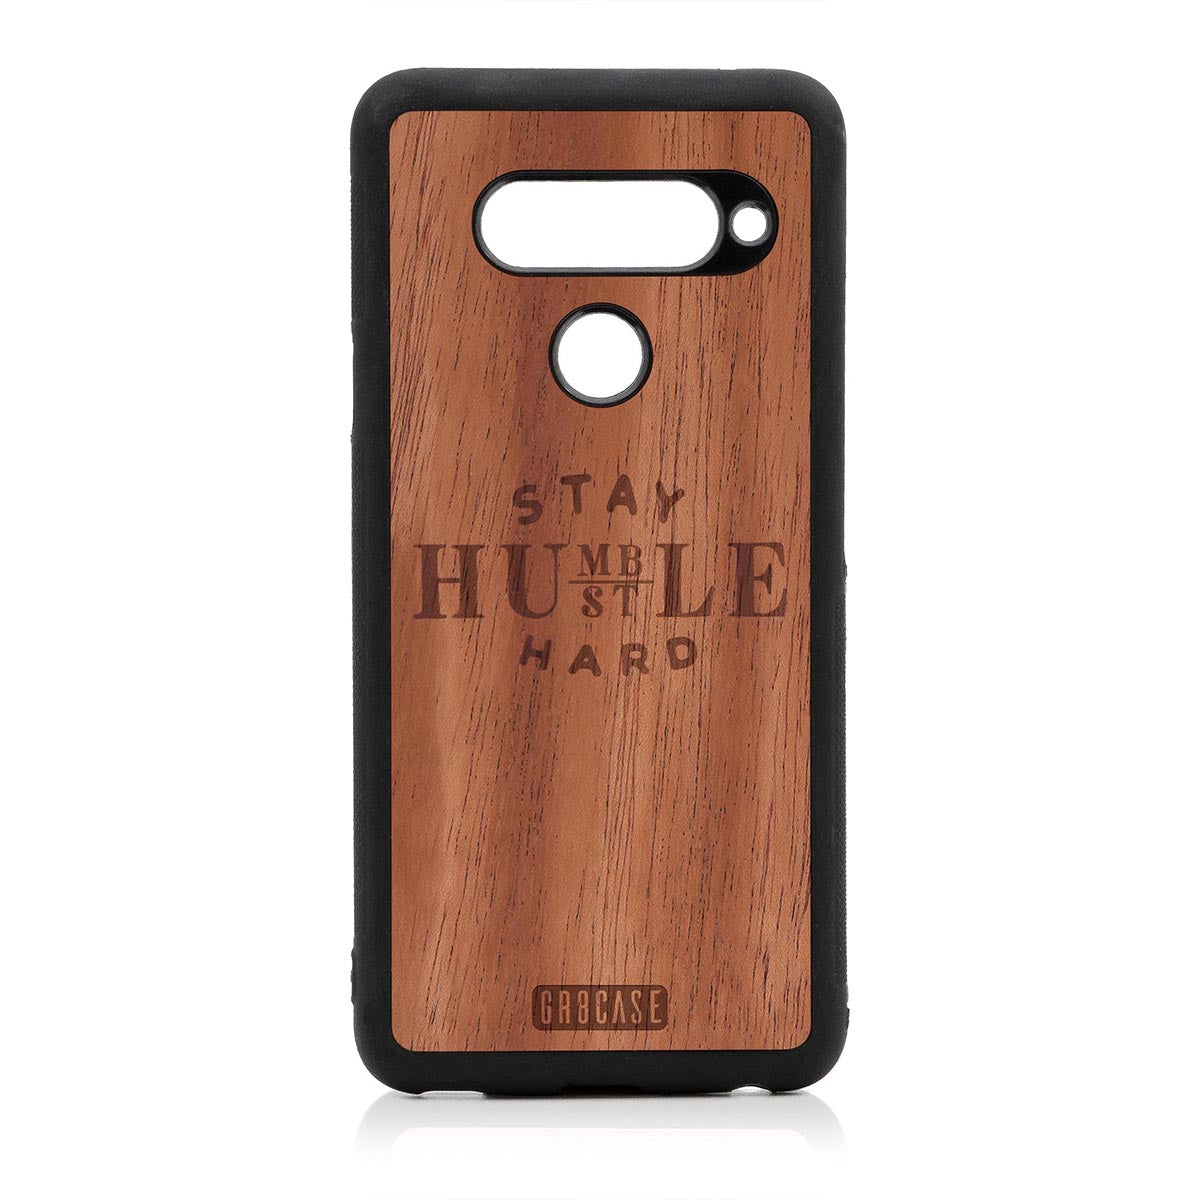 Stay Humble Hustle Hard Design Wood Case LG V40 by GR8CASE